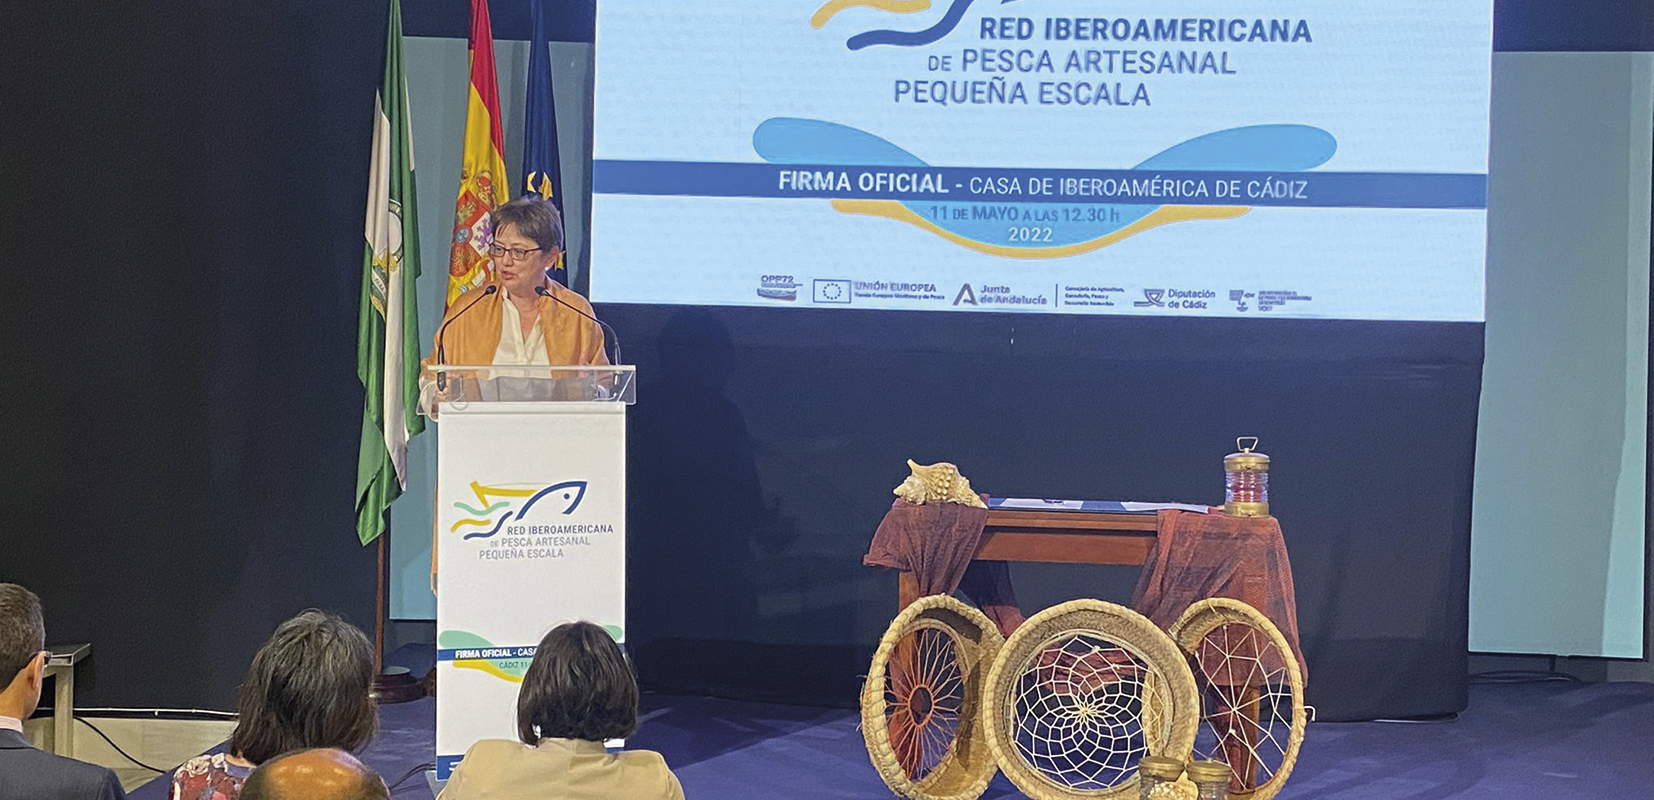 Mujer hablando en la conferencia de la Red Iberoamericana de Pesca Artesanal